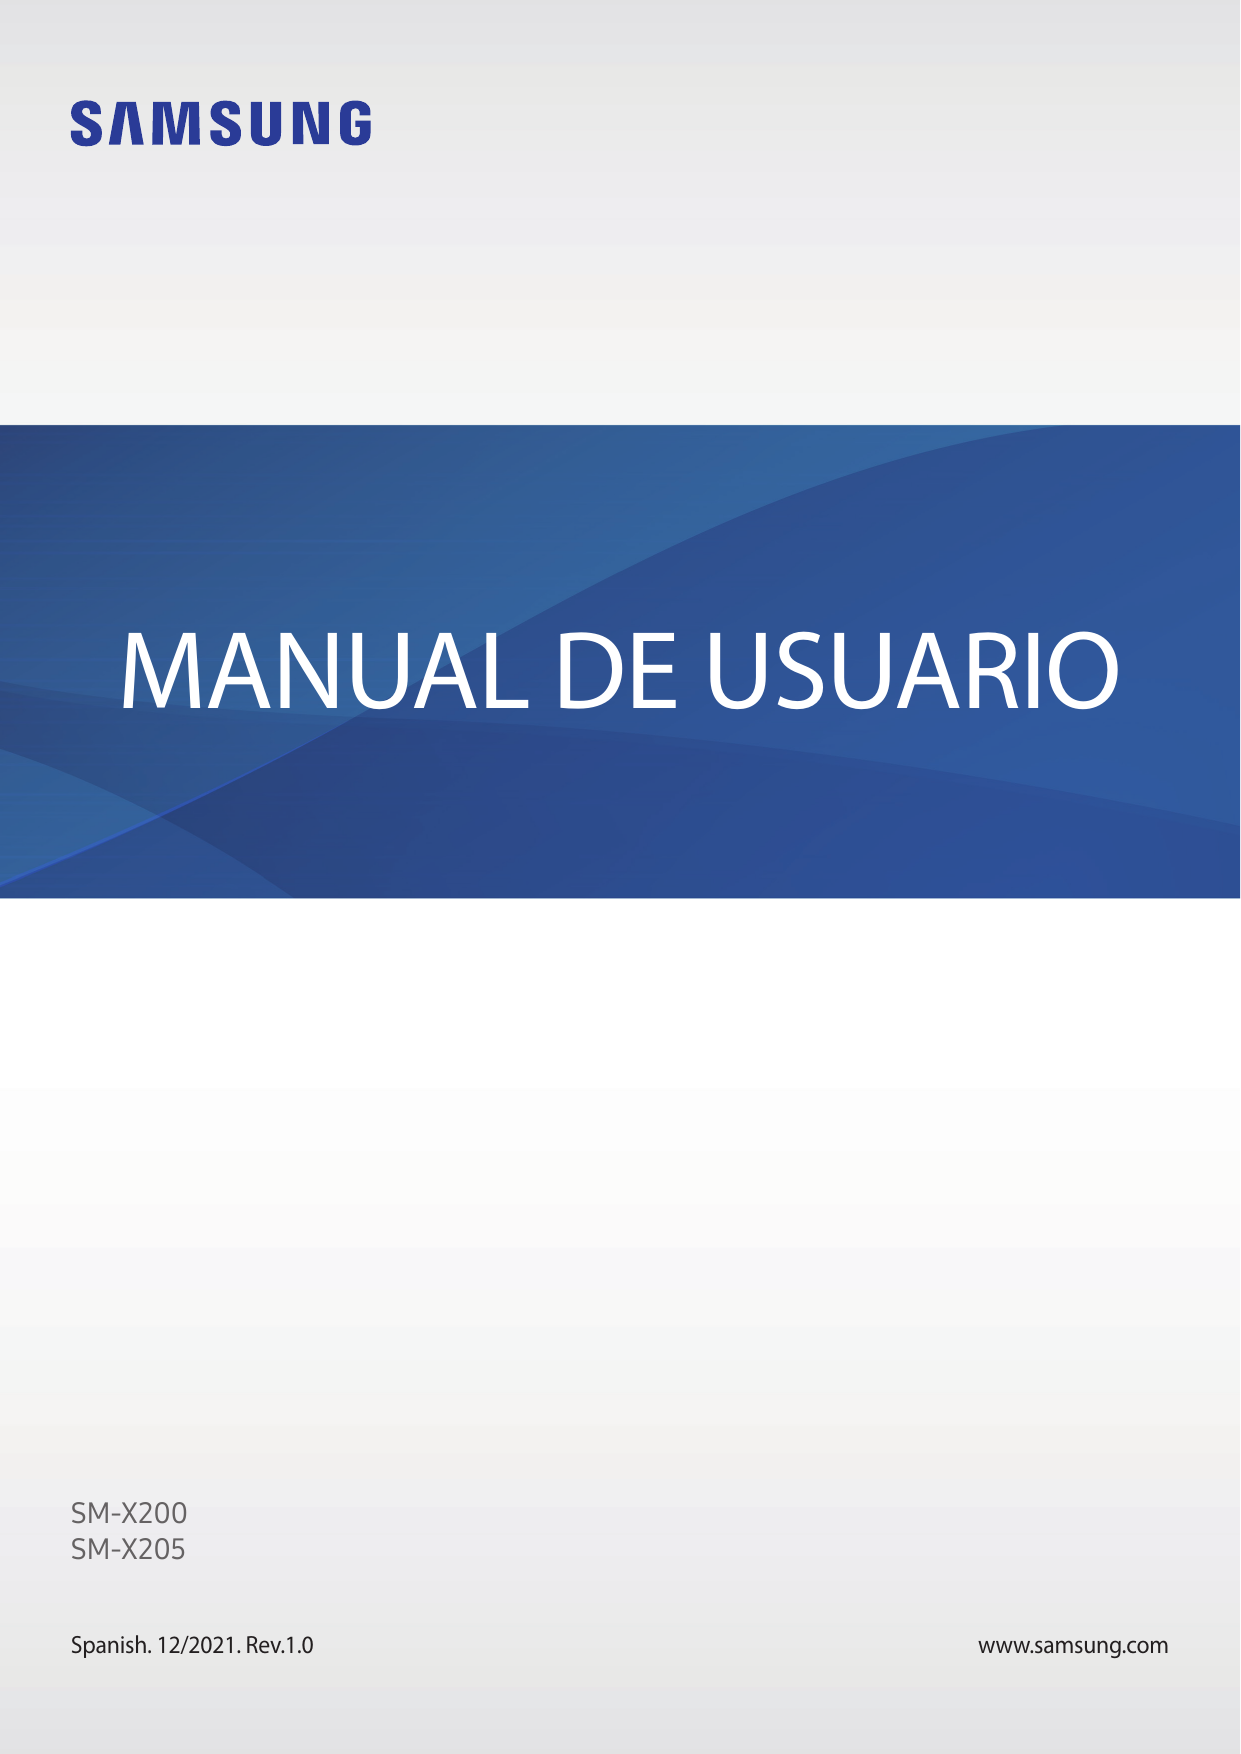 MANUAL DE USUARIOSM-X200SM-X205Spanish. 12/2021. Rev.1.0www.samsung.com